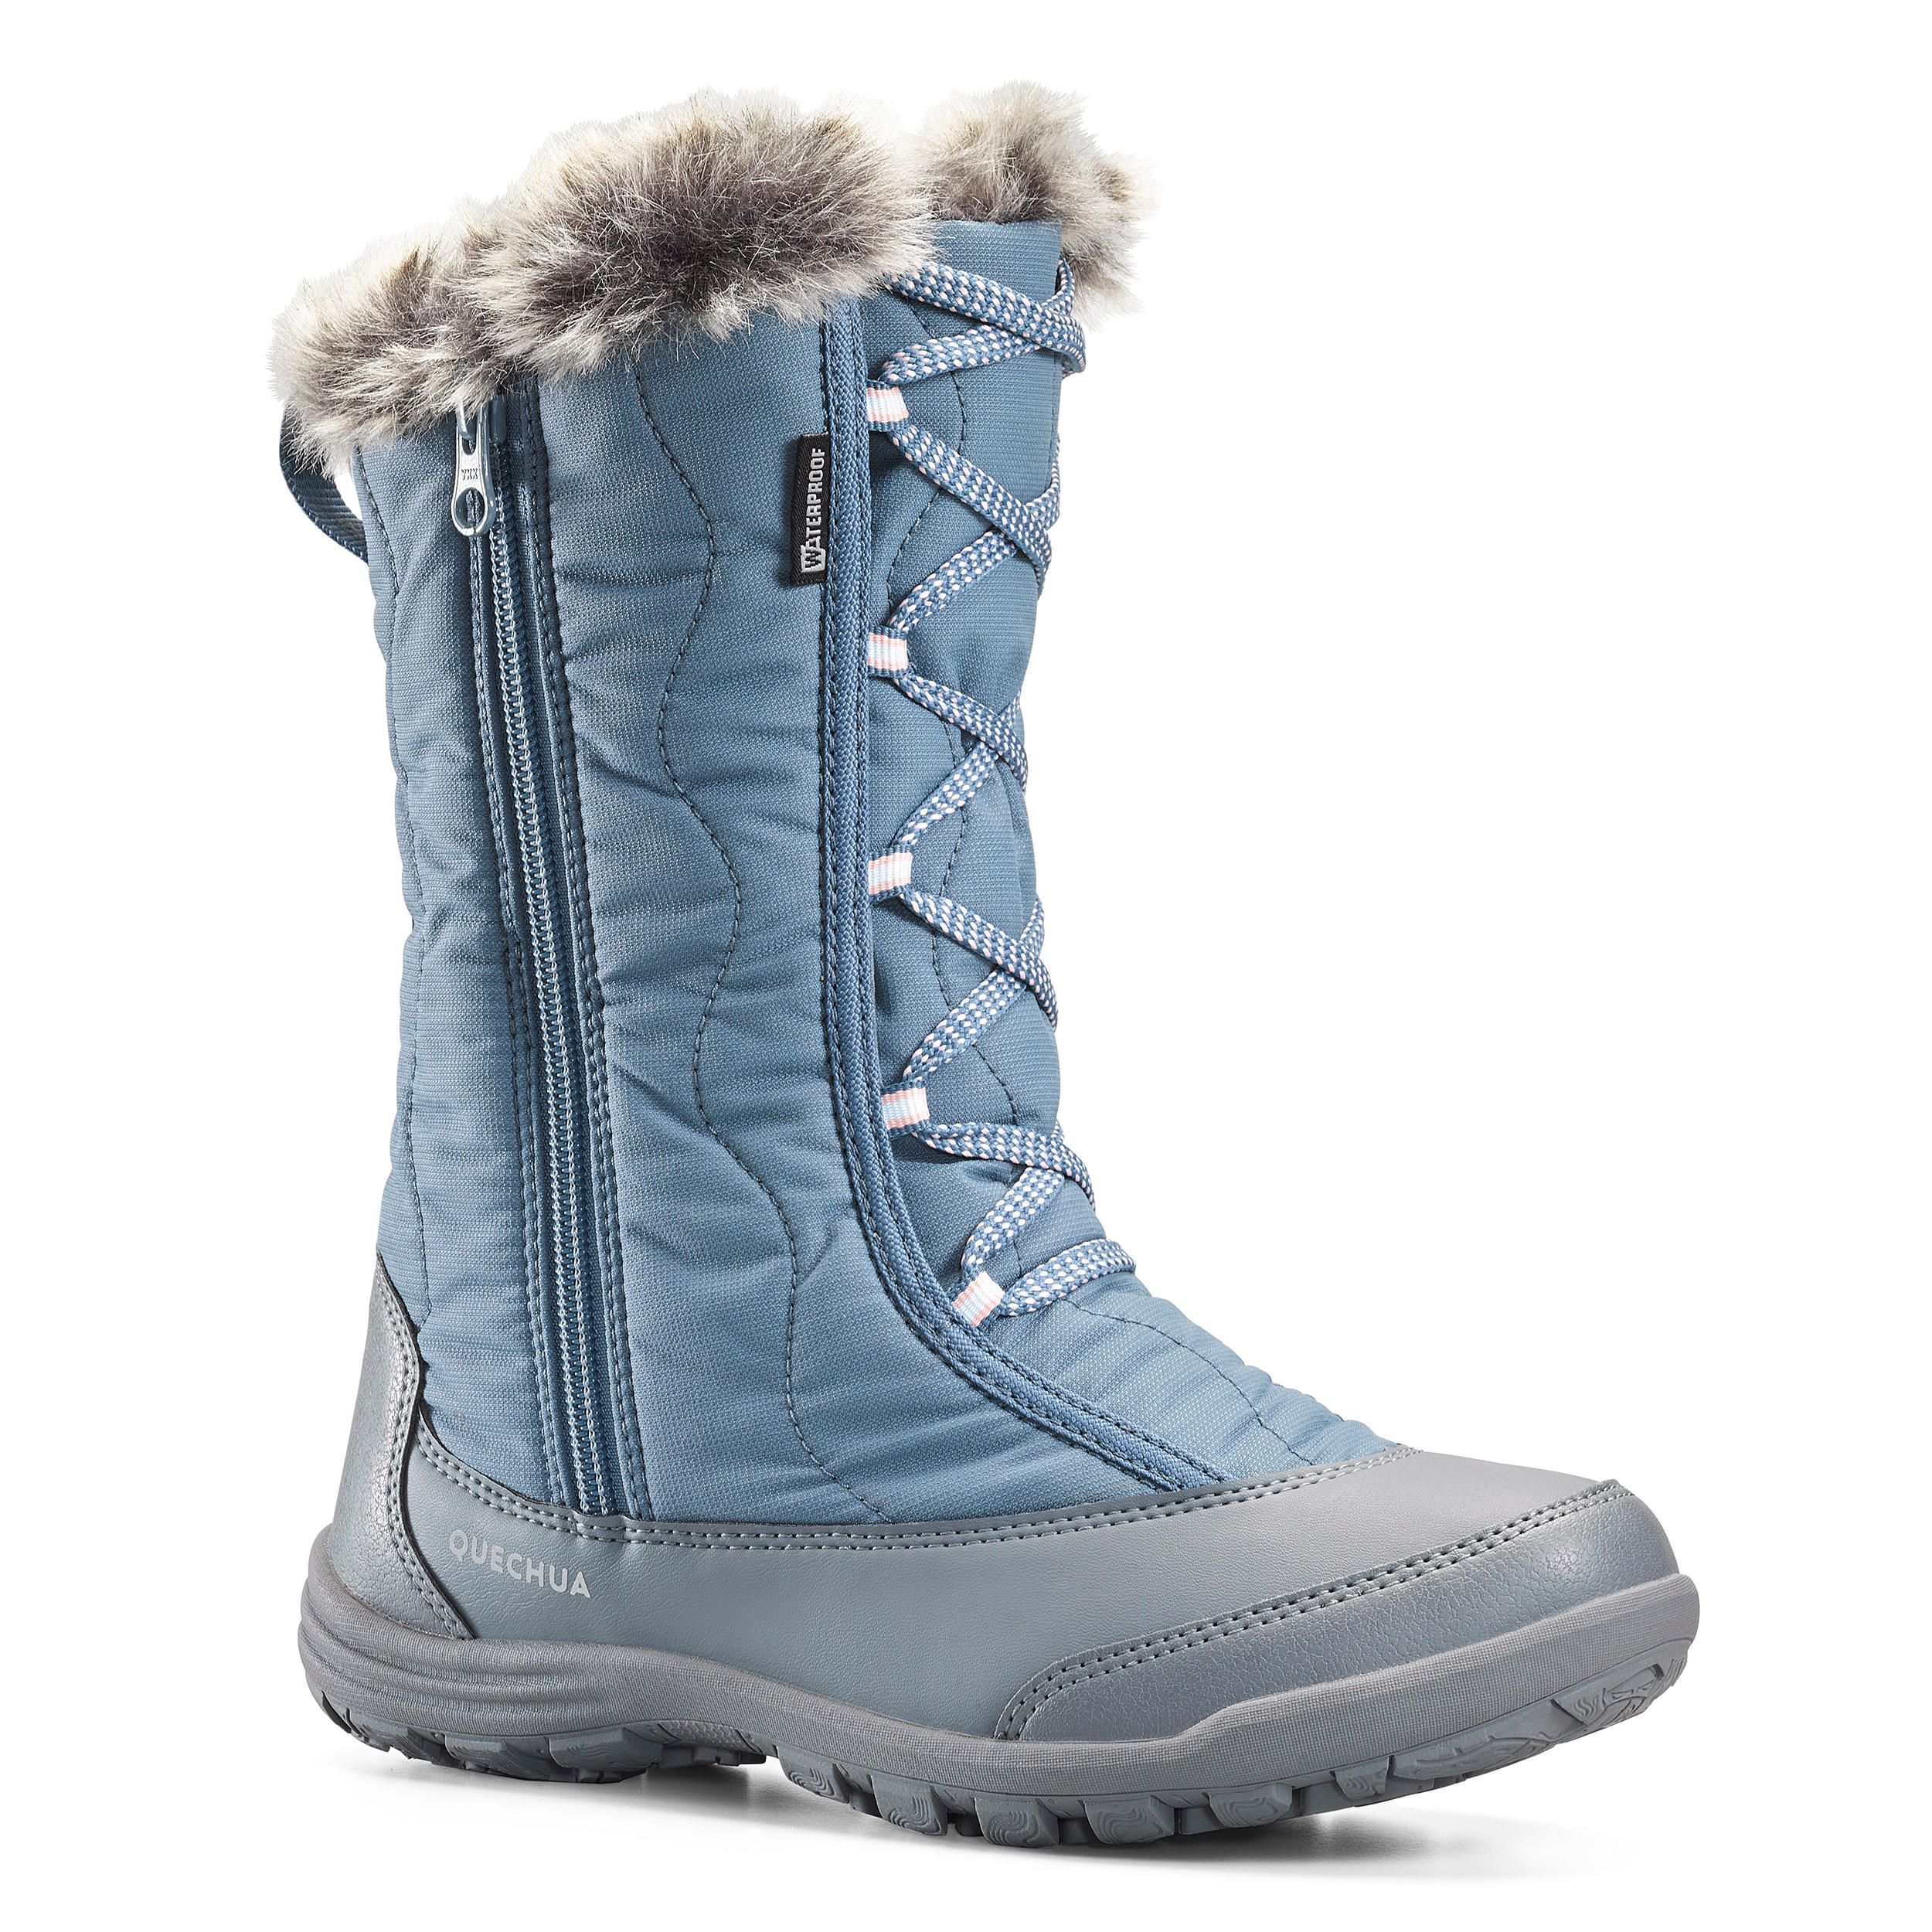 Cizme călduroase impermeabile Iarnă/drumeţie zăpadă SH500 X-Warm Copii La Oferta Online decathlon imagine La Oferta Online